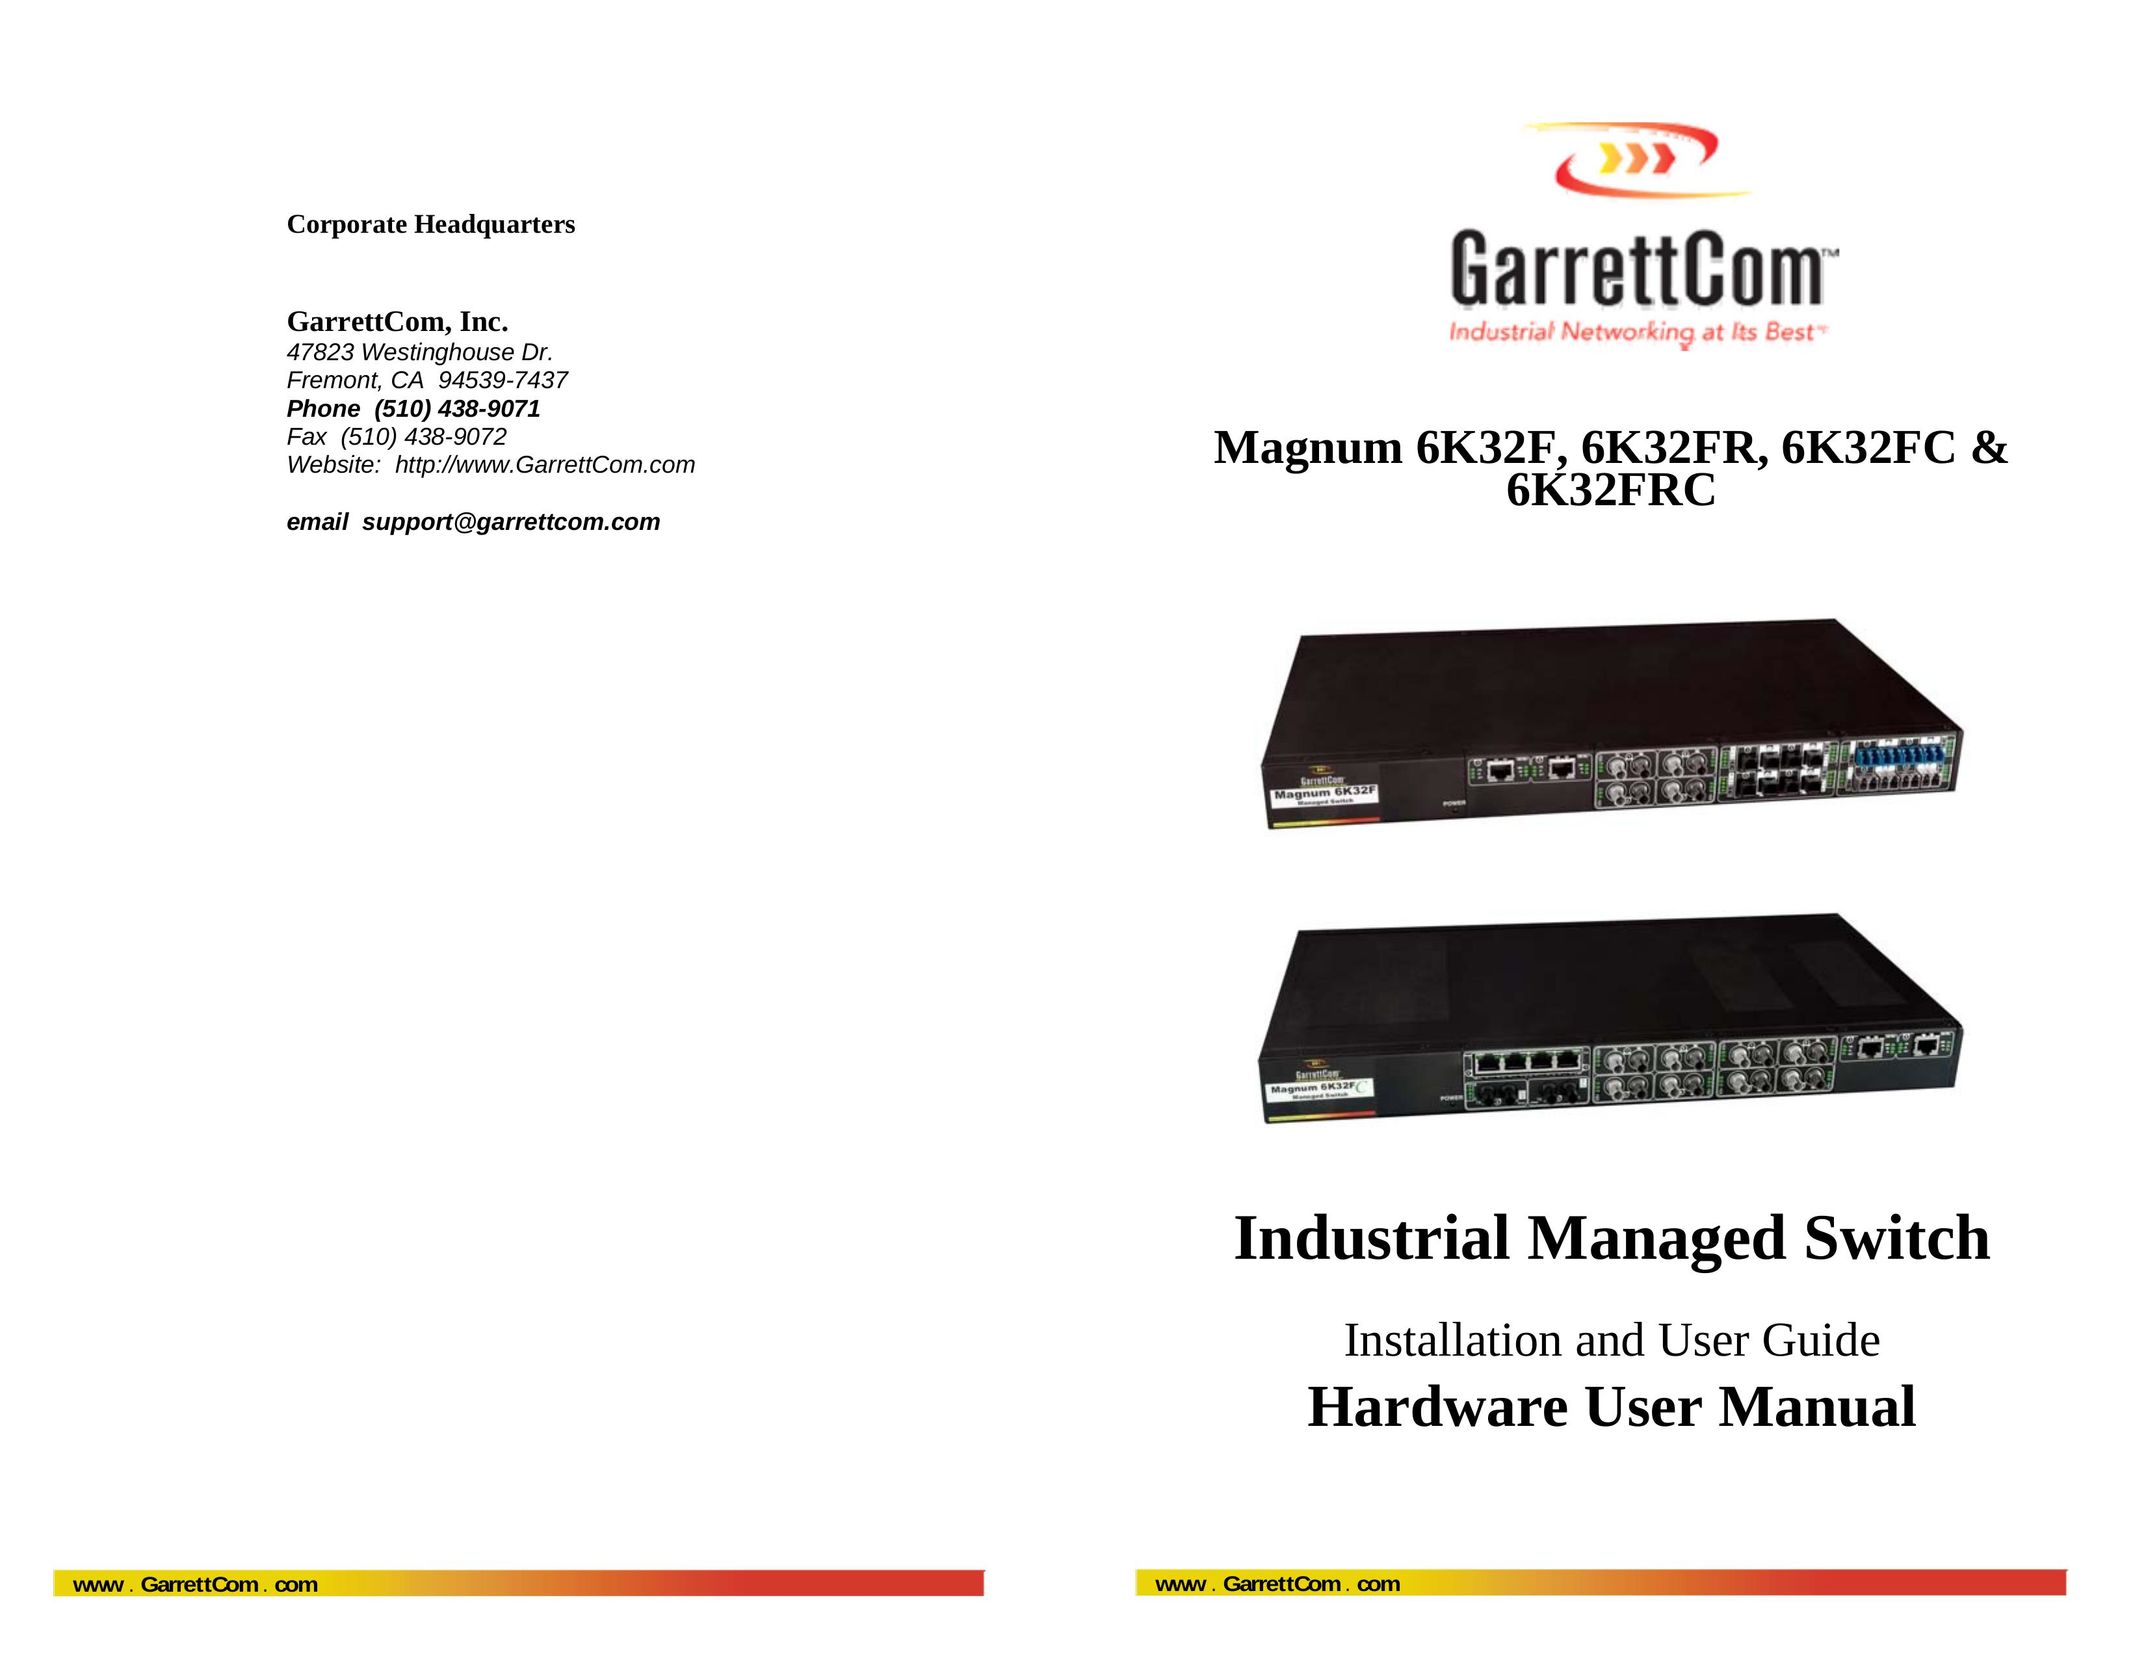 GarrettCom 6K32FRC Network Router User Manual